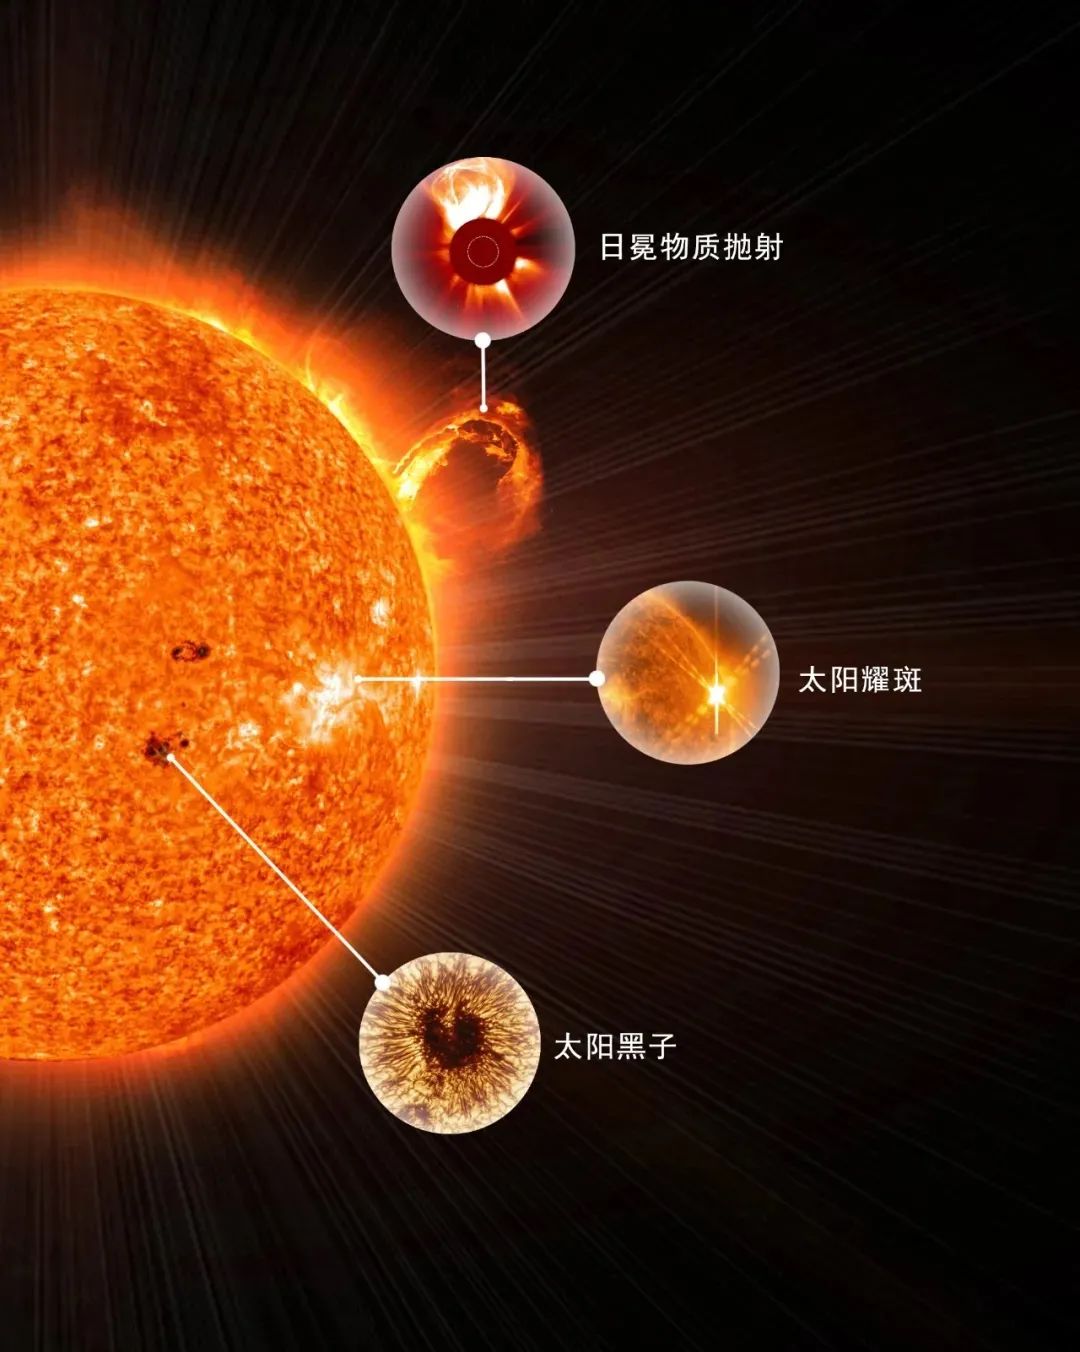 日冕物质抛射-esa&nasa/soho,太阳耀斑-sdo,太阳黑子-nso/aura